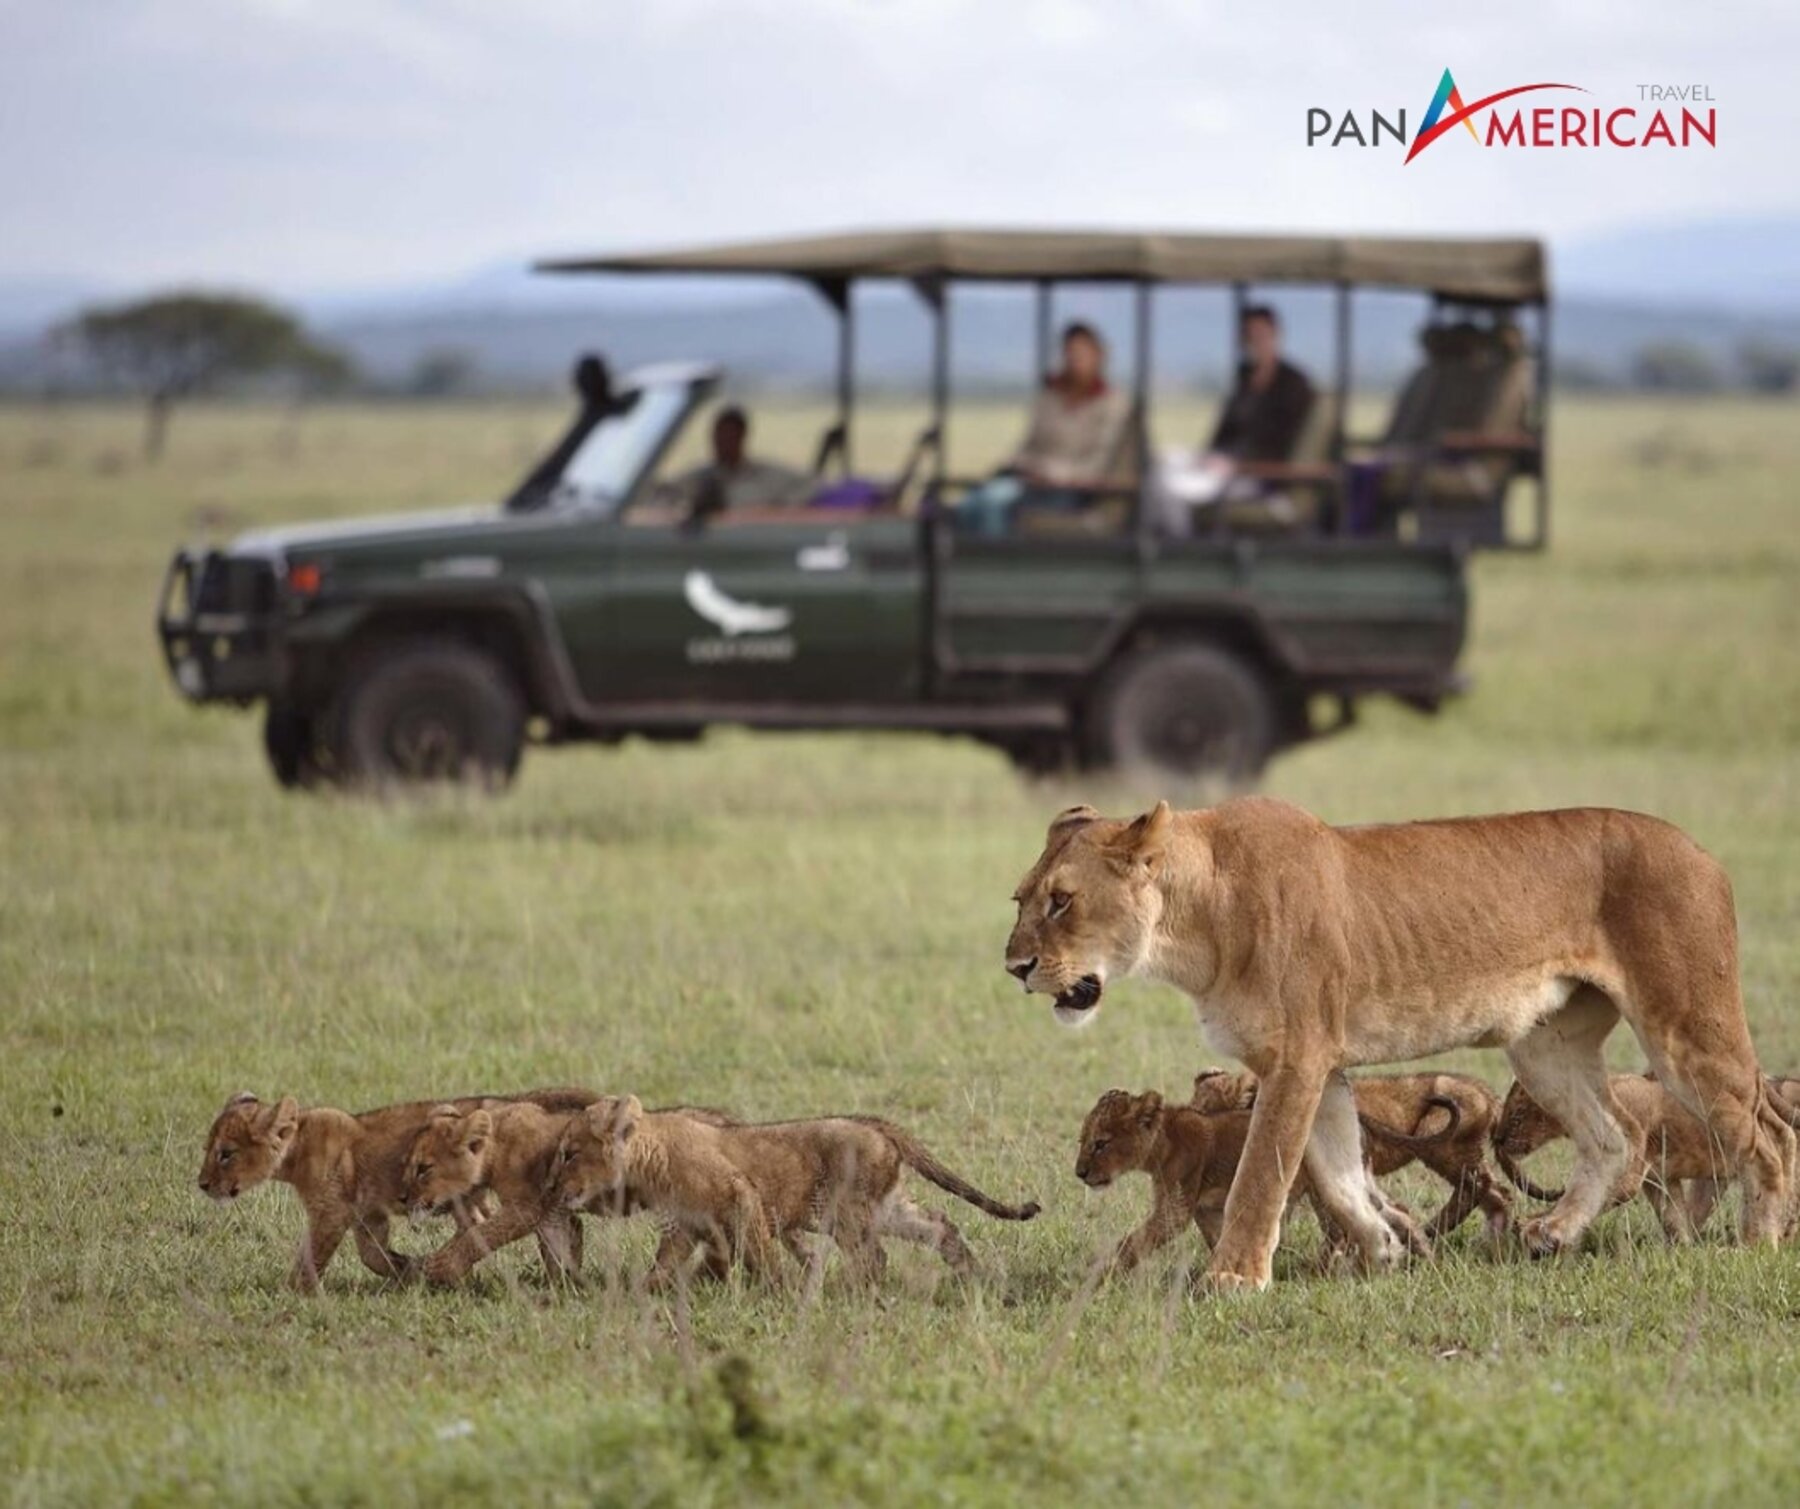 Du lịch Serengeti: 4 trải nghiệm hấp dẫn không thể bỏ lỡ tại công viên quốc gia lớn nhất Tanzania - Gallery Image